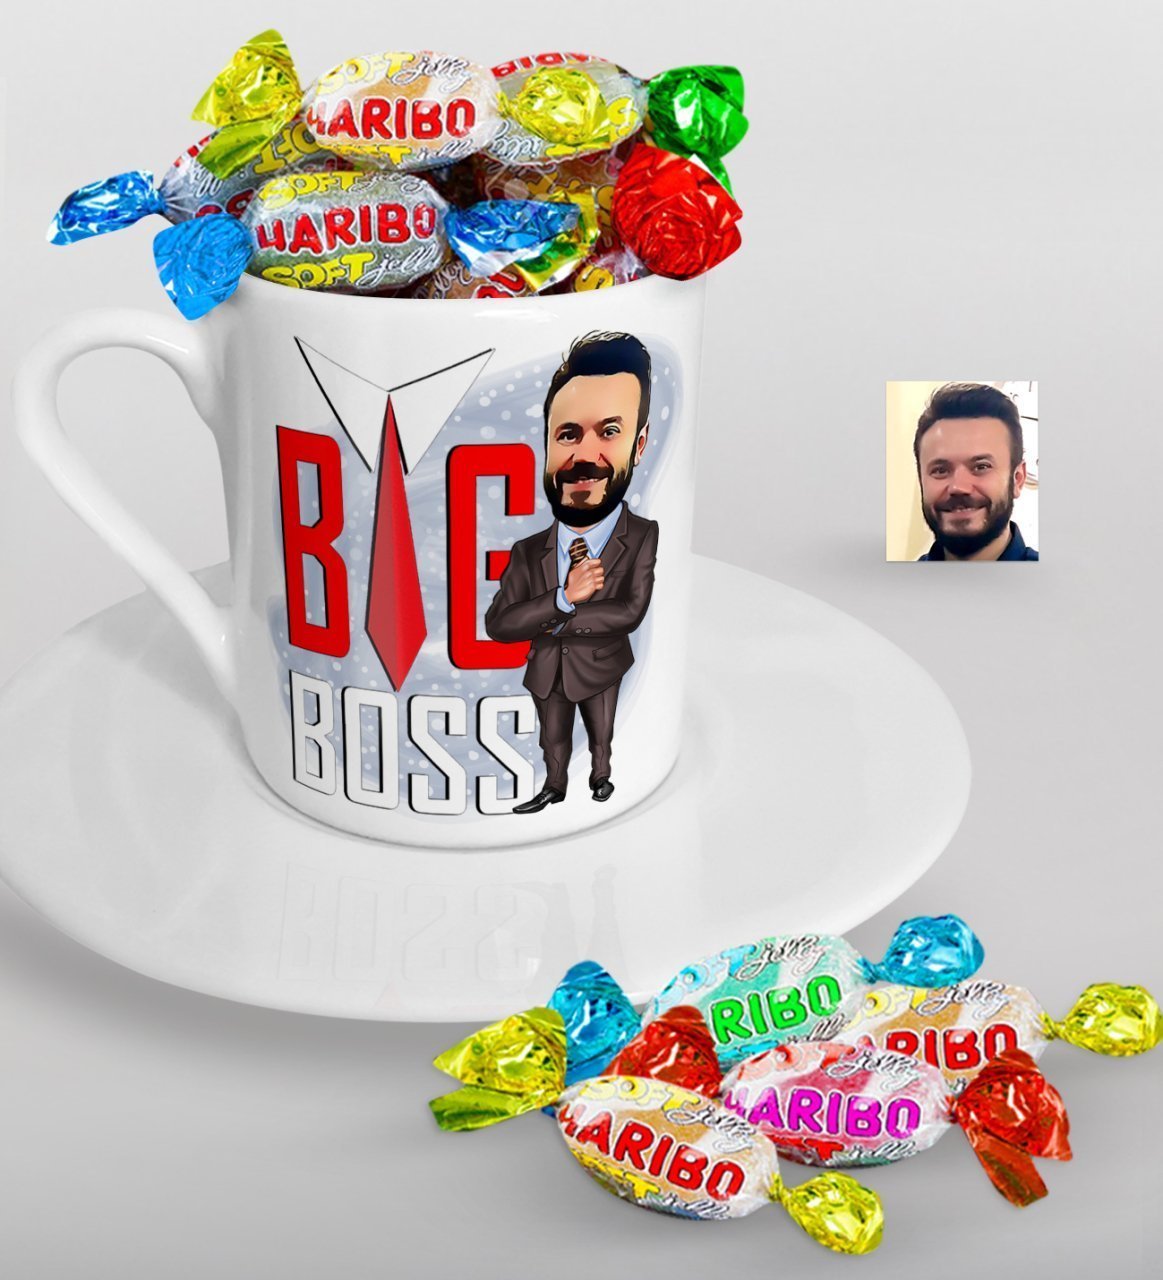 Kişiye Özel Bay Big Boss Karikatürlü Türk Kahvesi Fincanı ve Haribo Şeker Hediye Seti-4